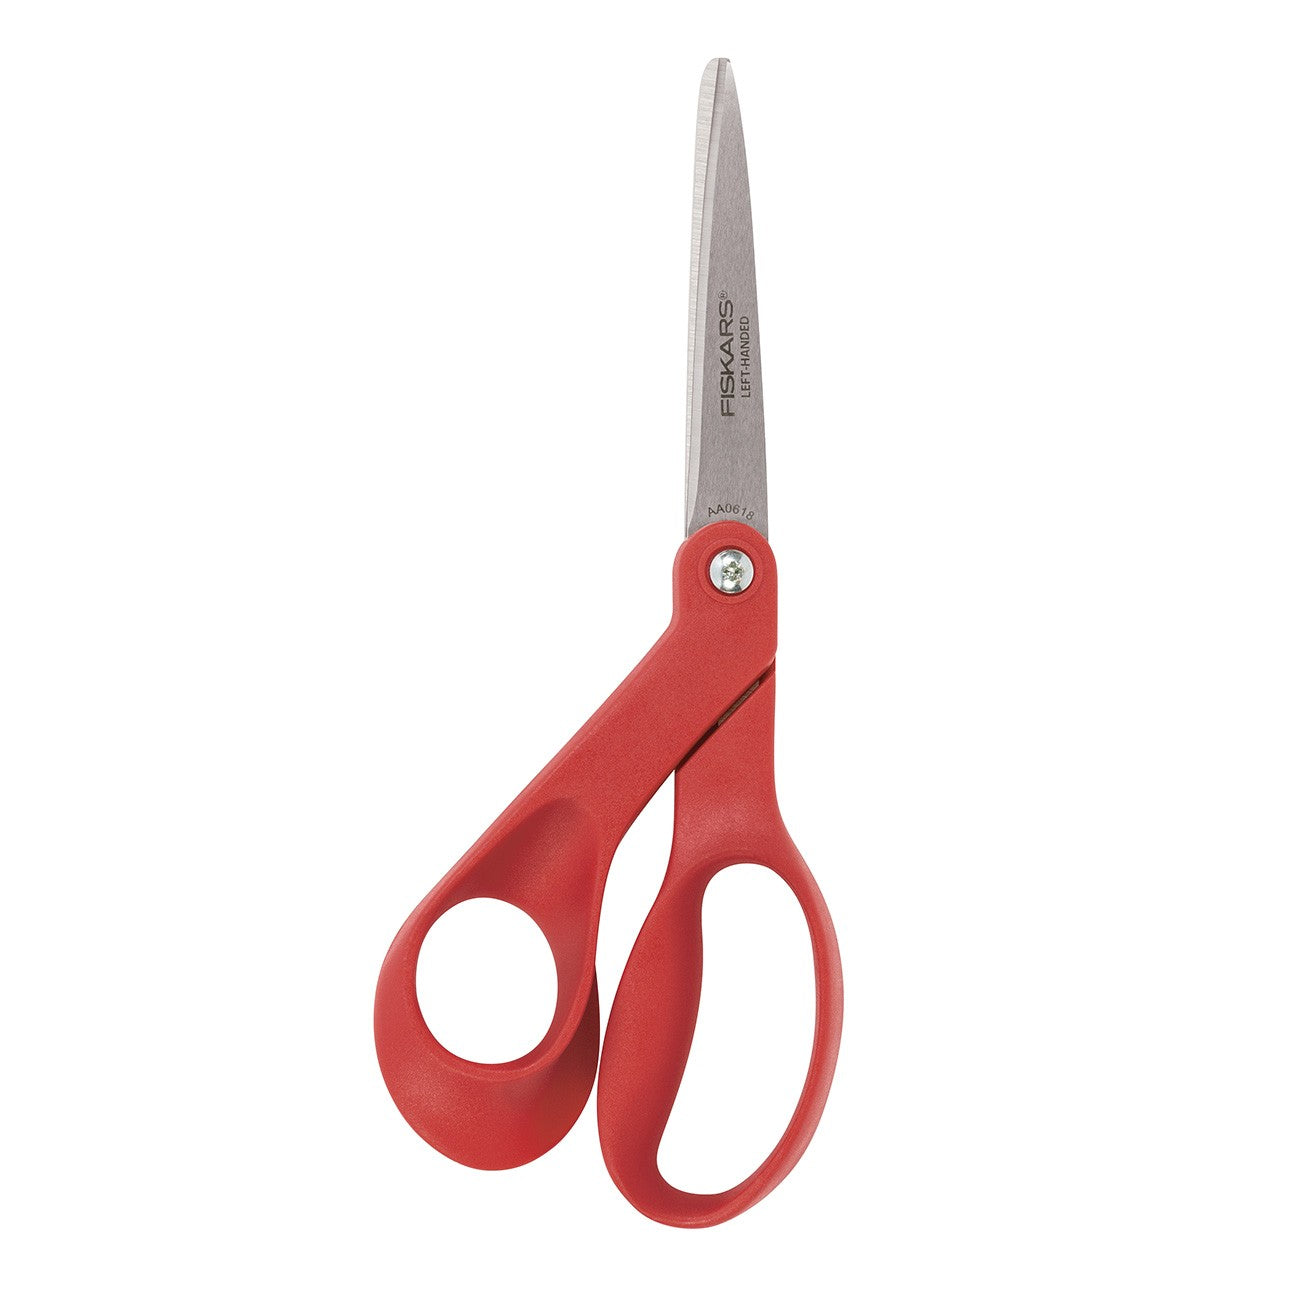 Left Handed Premier Bent Scissor - 7-inch